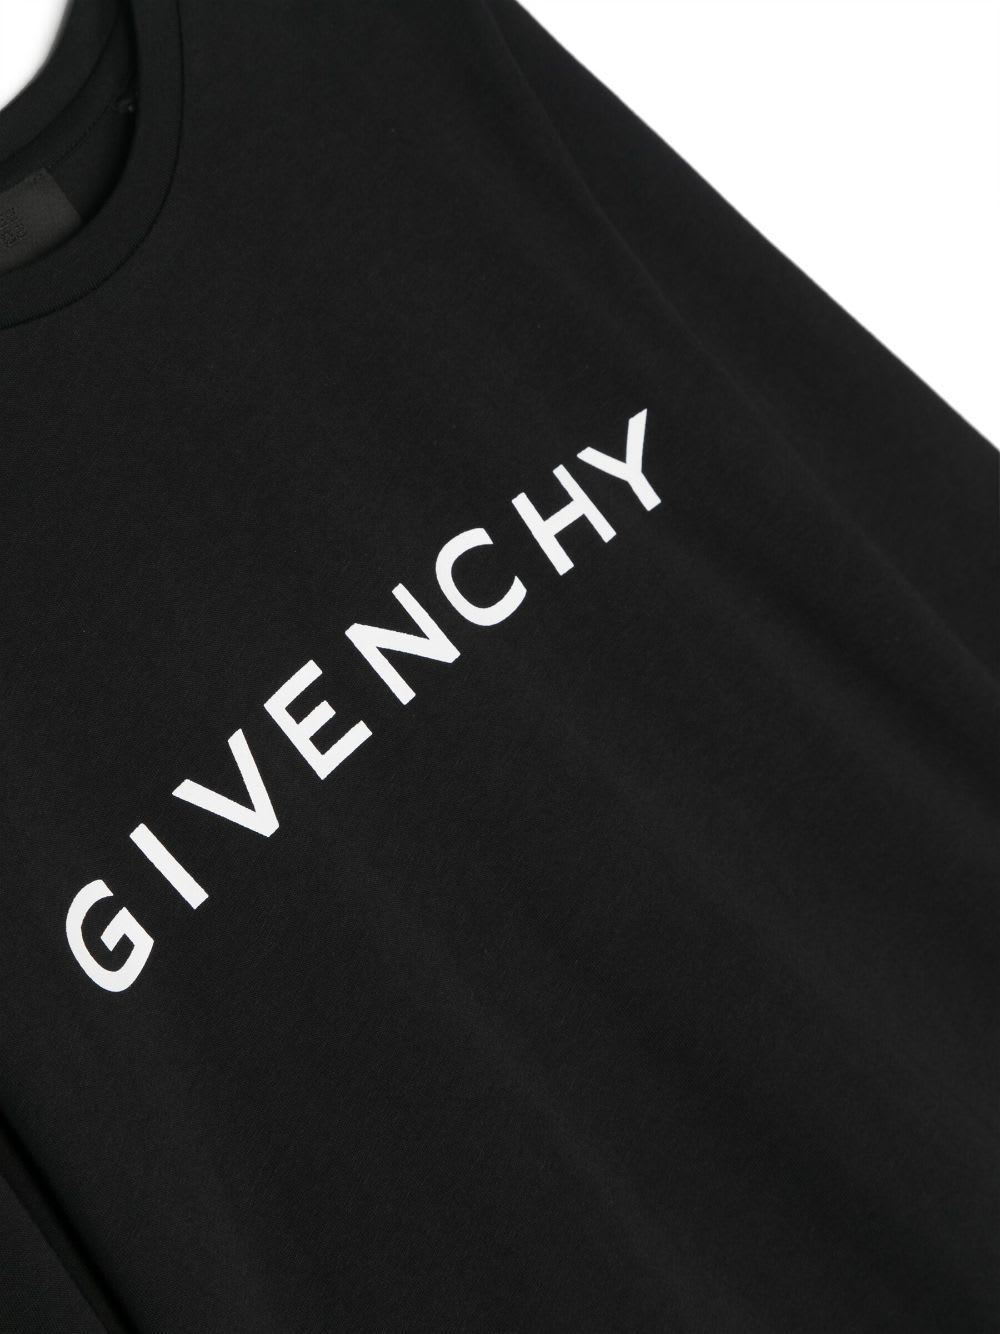 Shop Givenchy T-shirt Nera In Jersey Di Cotone Bambino In Bianco